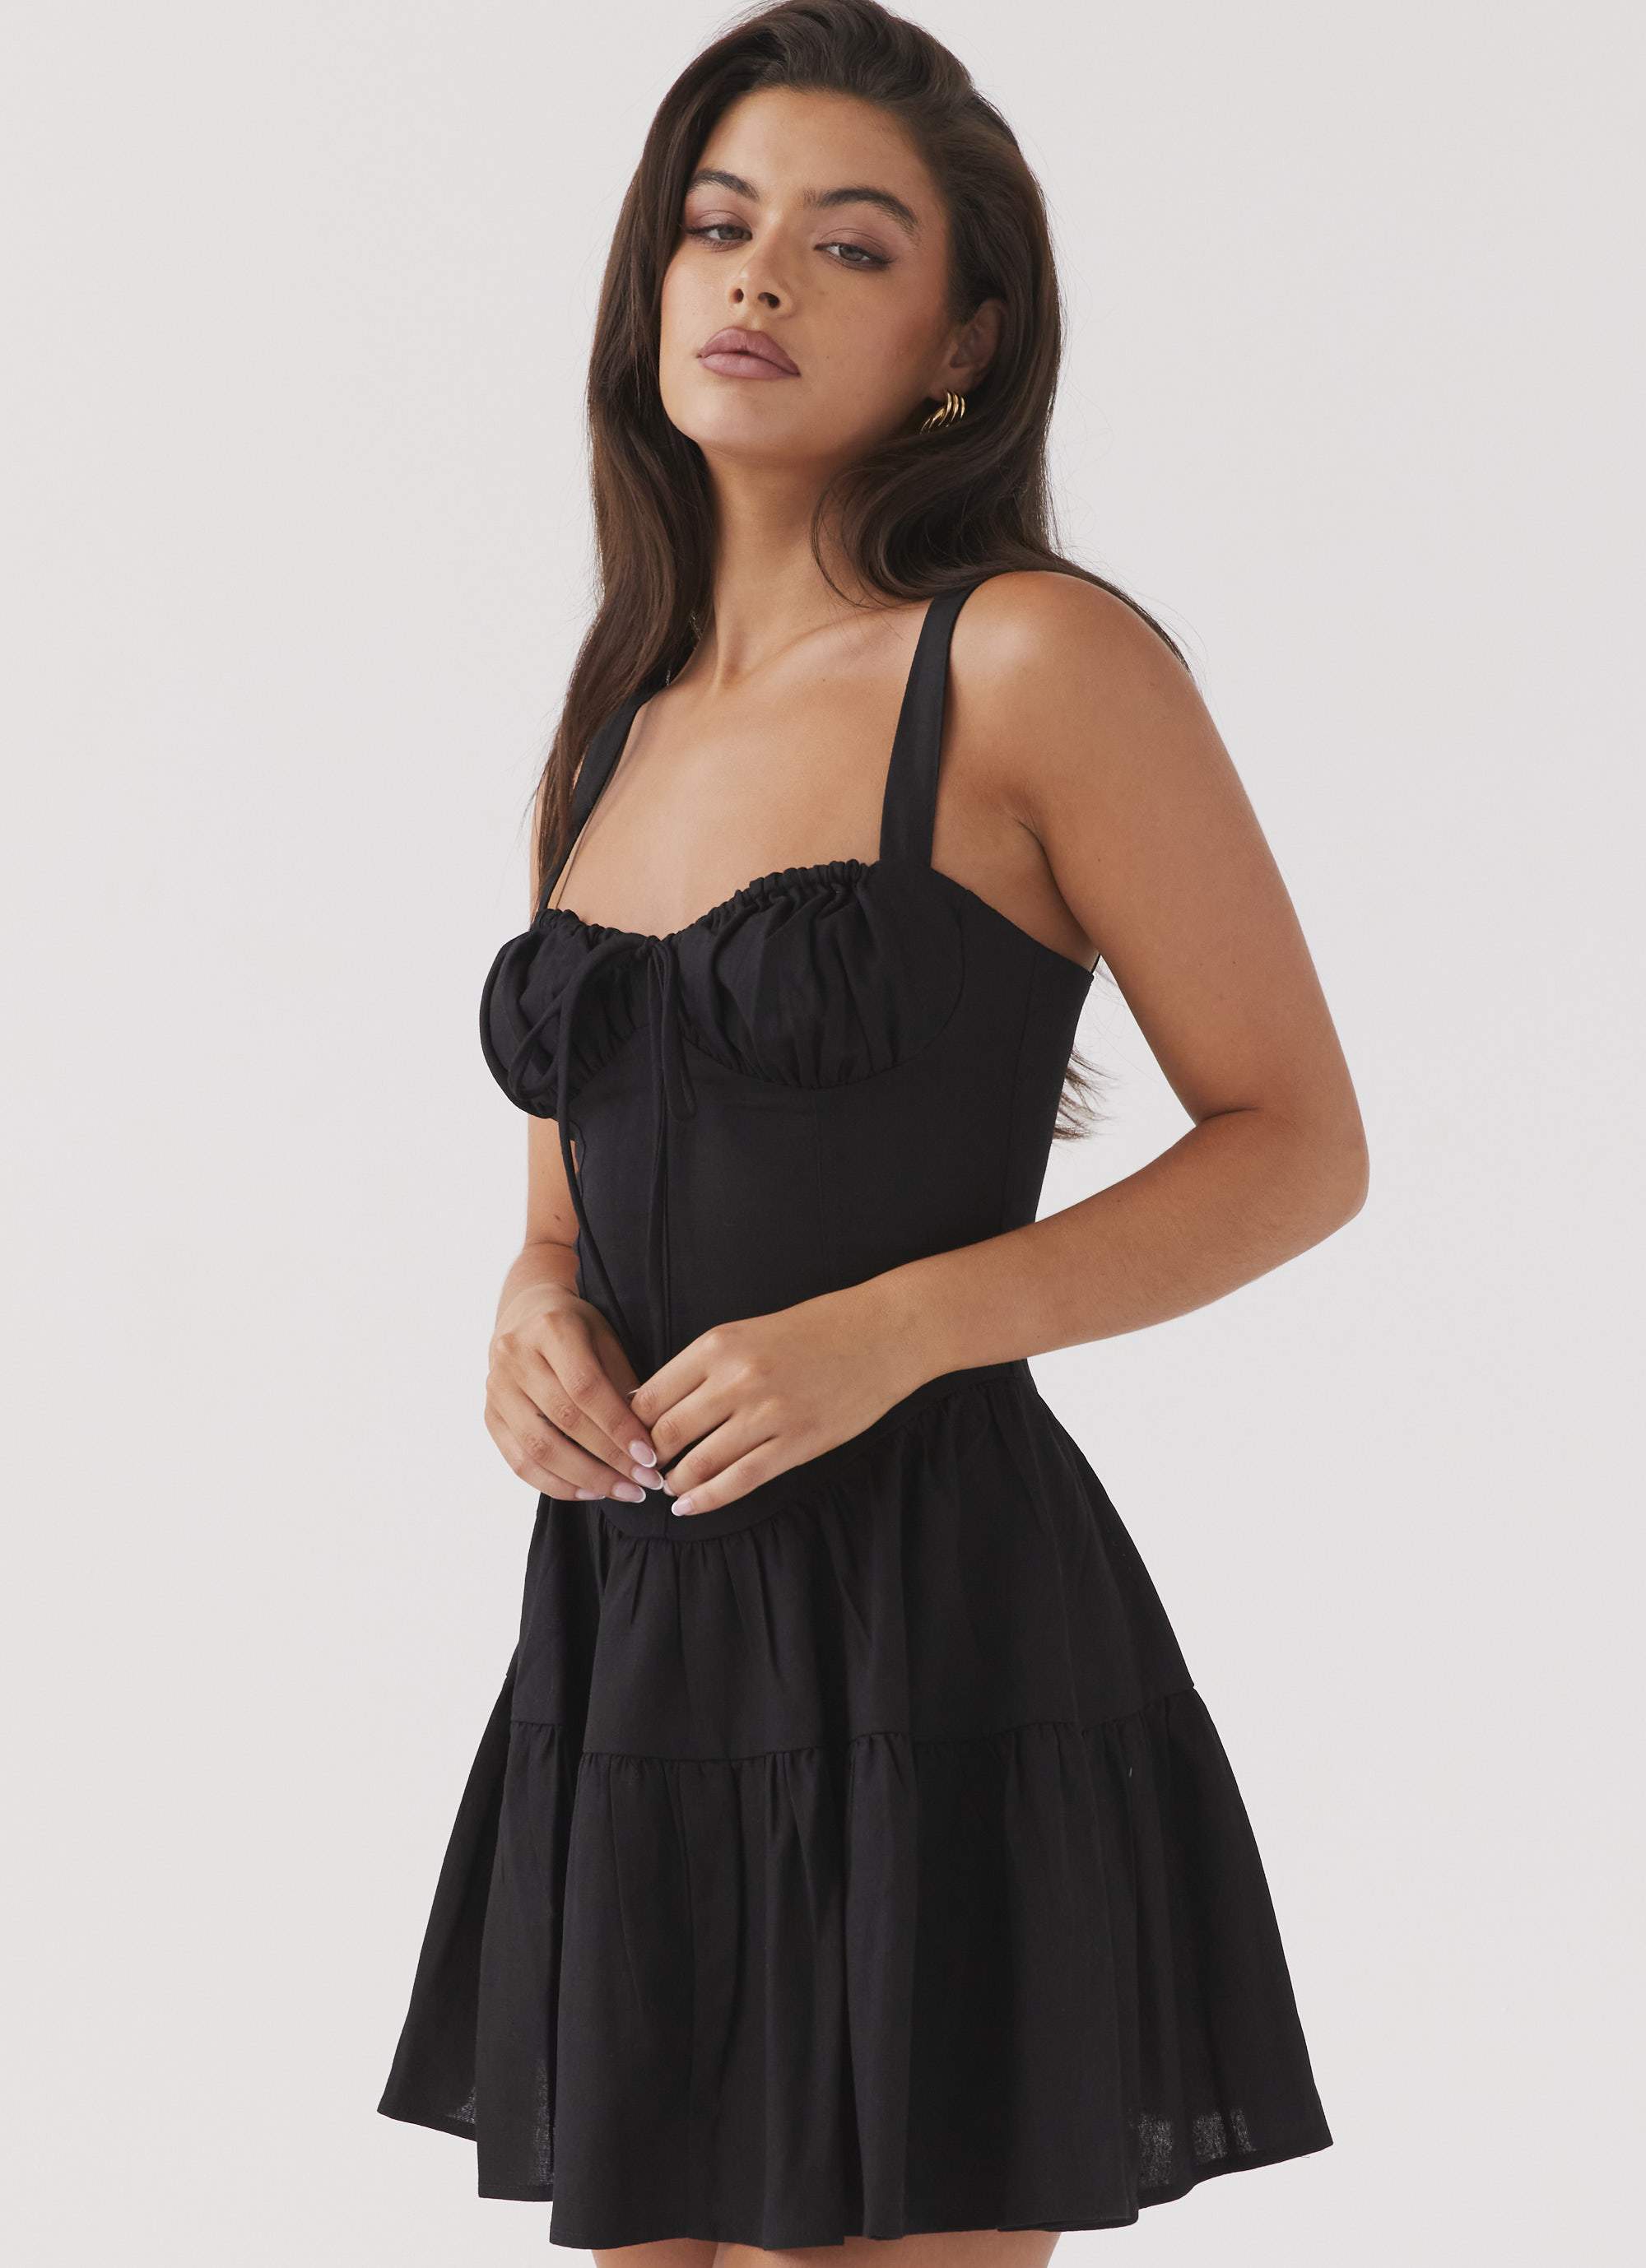 Malle Black Linen Dress